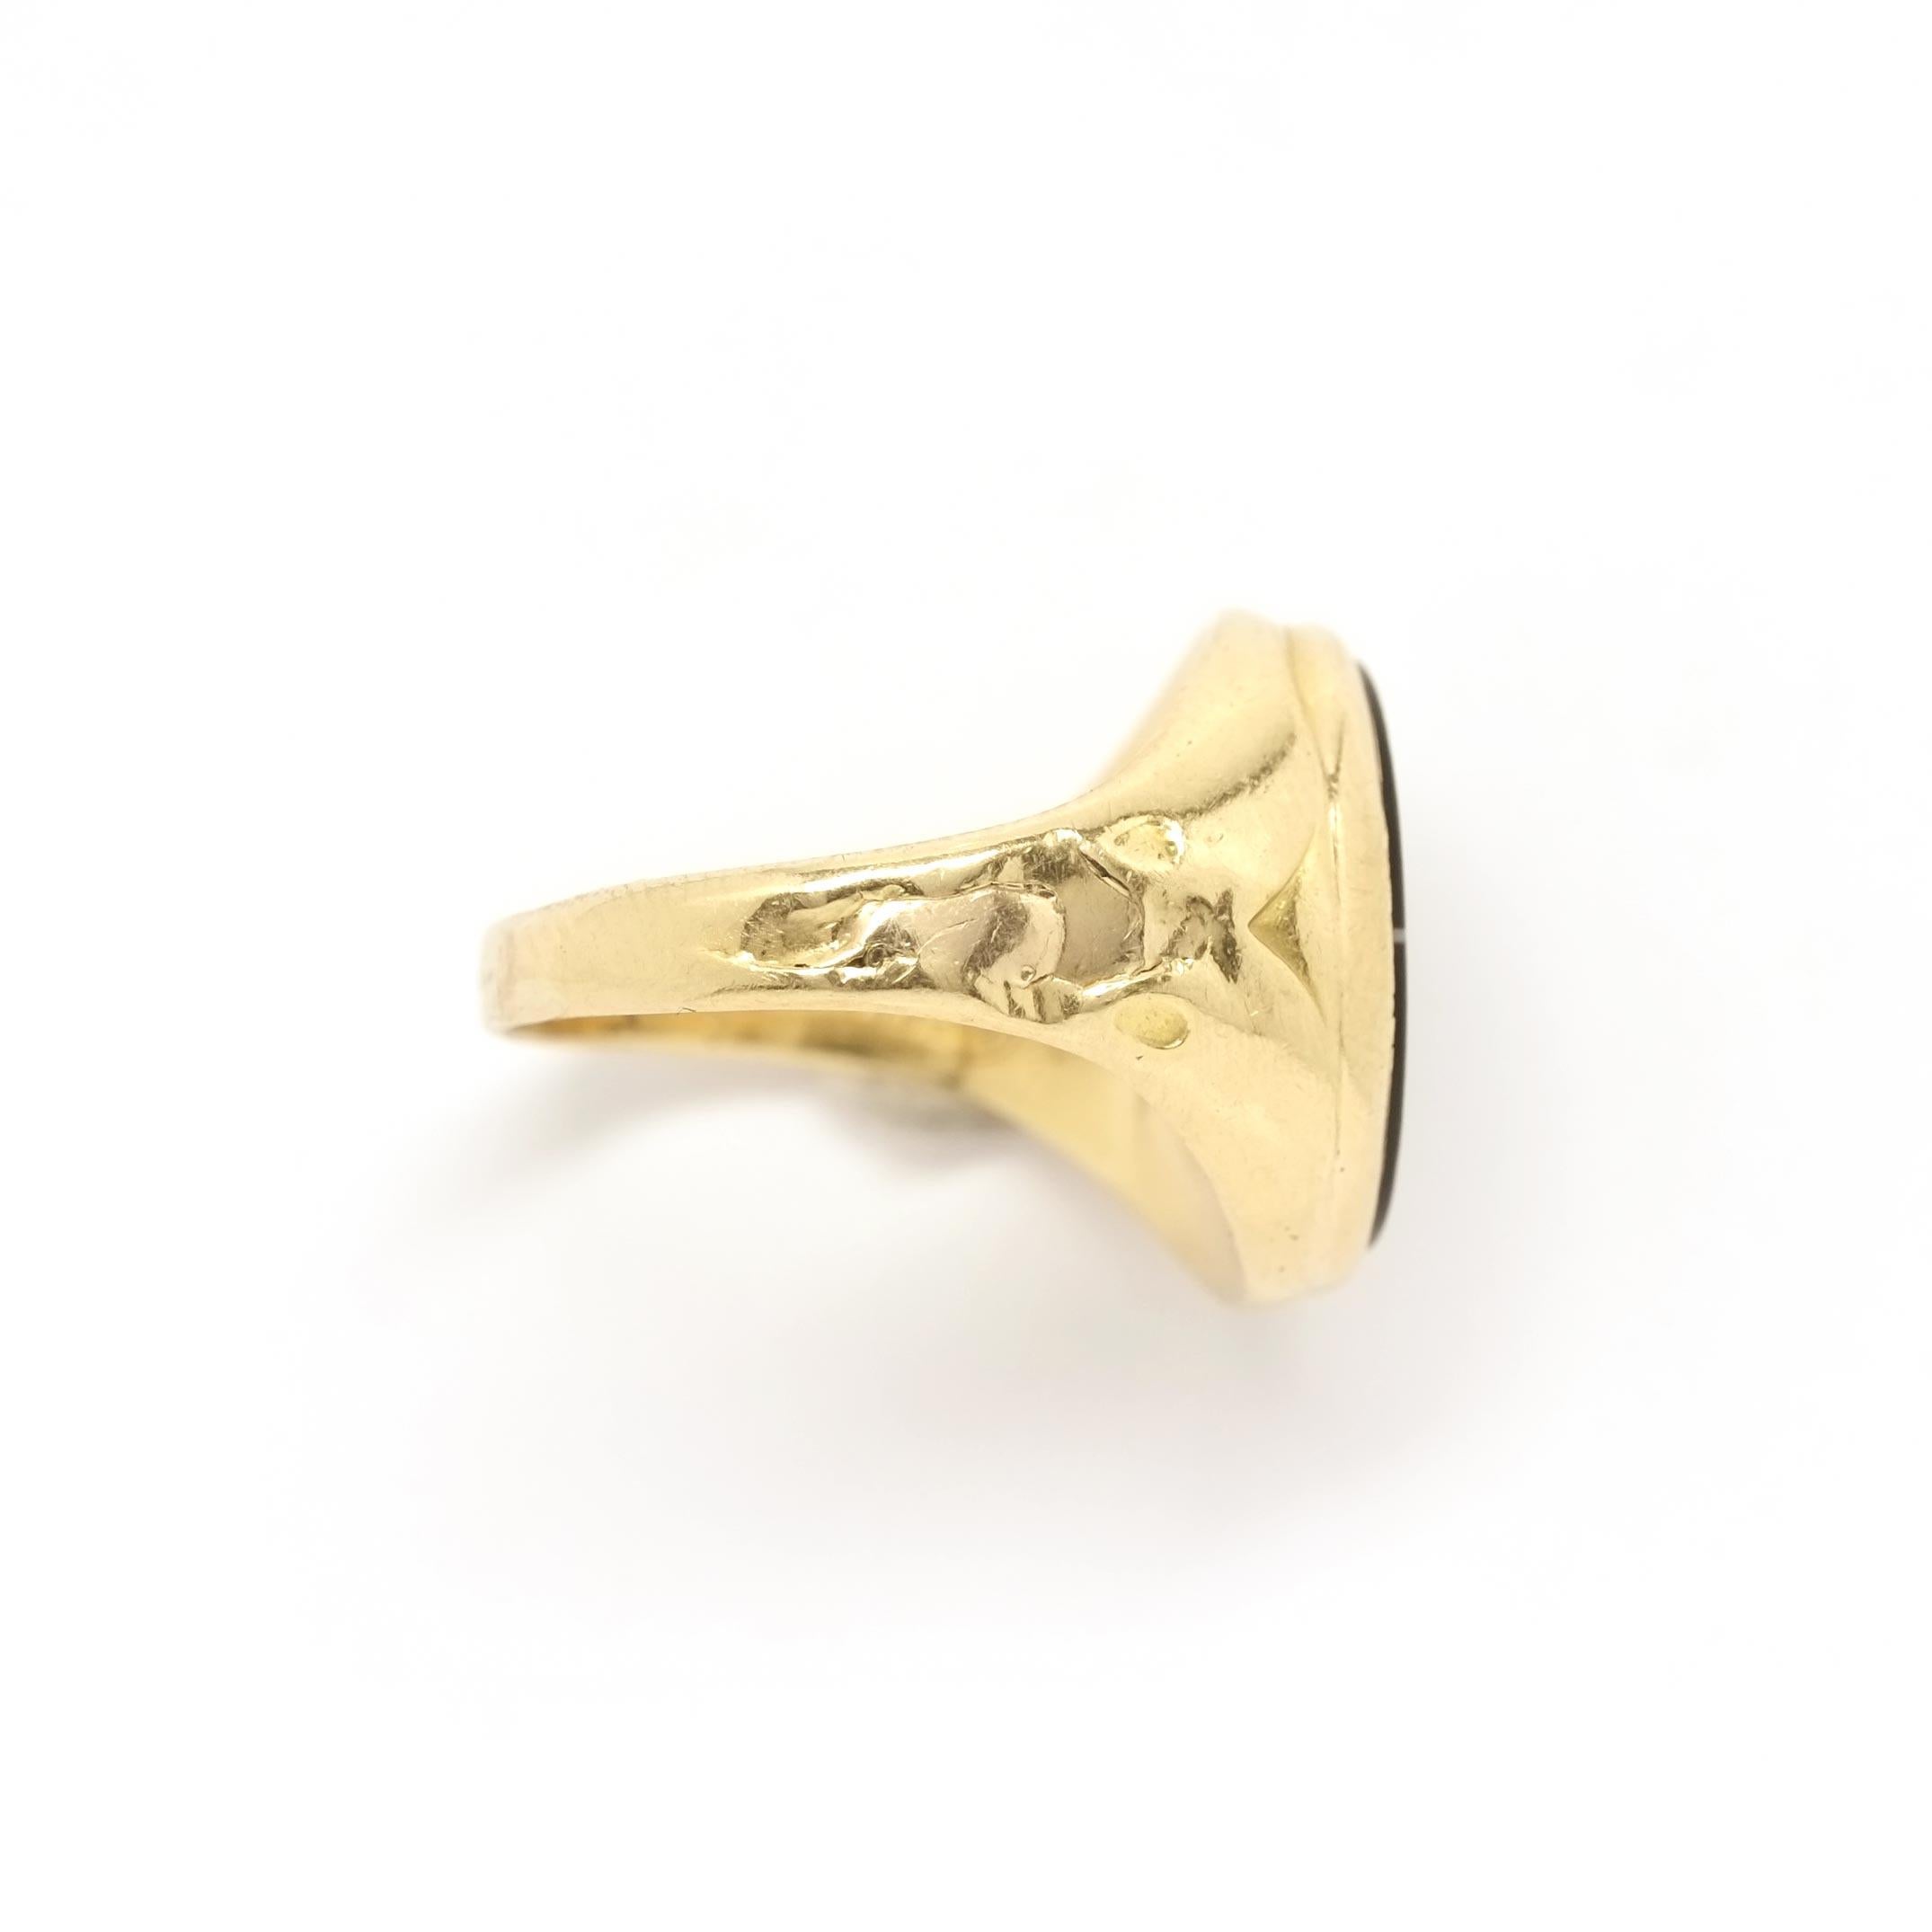 Goldener Siegelring mit handgraviertem zweifarbigem Achat aus dem späten XIX Jahrhundert. Einzigartig durch seine Geschichte, einzigartig durch den Stein. Auf dem Stiel sind die Erinnerungen des ursprünglichen Besitzers eingraviert, dessen Name noch